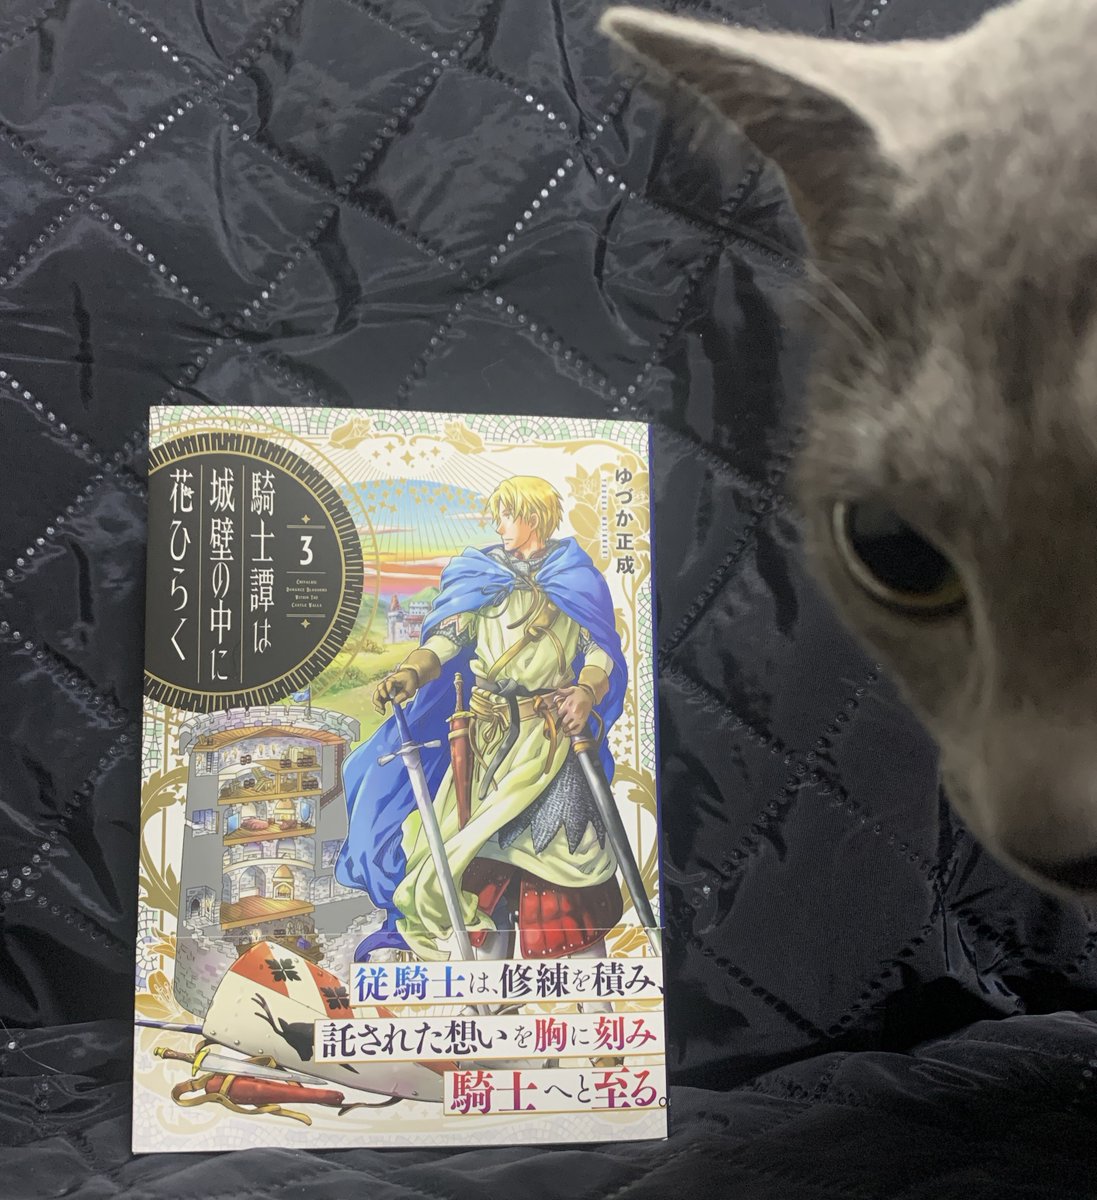 本日発売の『騎士譚は城壁の中に花ひらく』3巻に、いけ好かなさそうに見えてまあまあ優しそうなおっさんとして吉田輝和が登場してるぞ! 